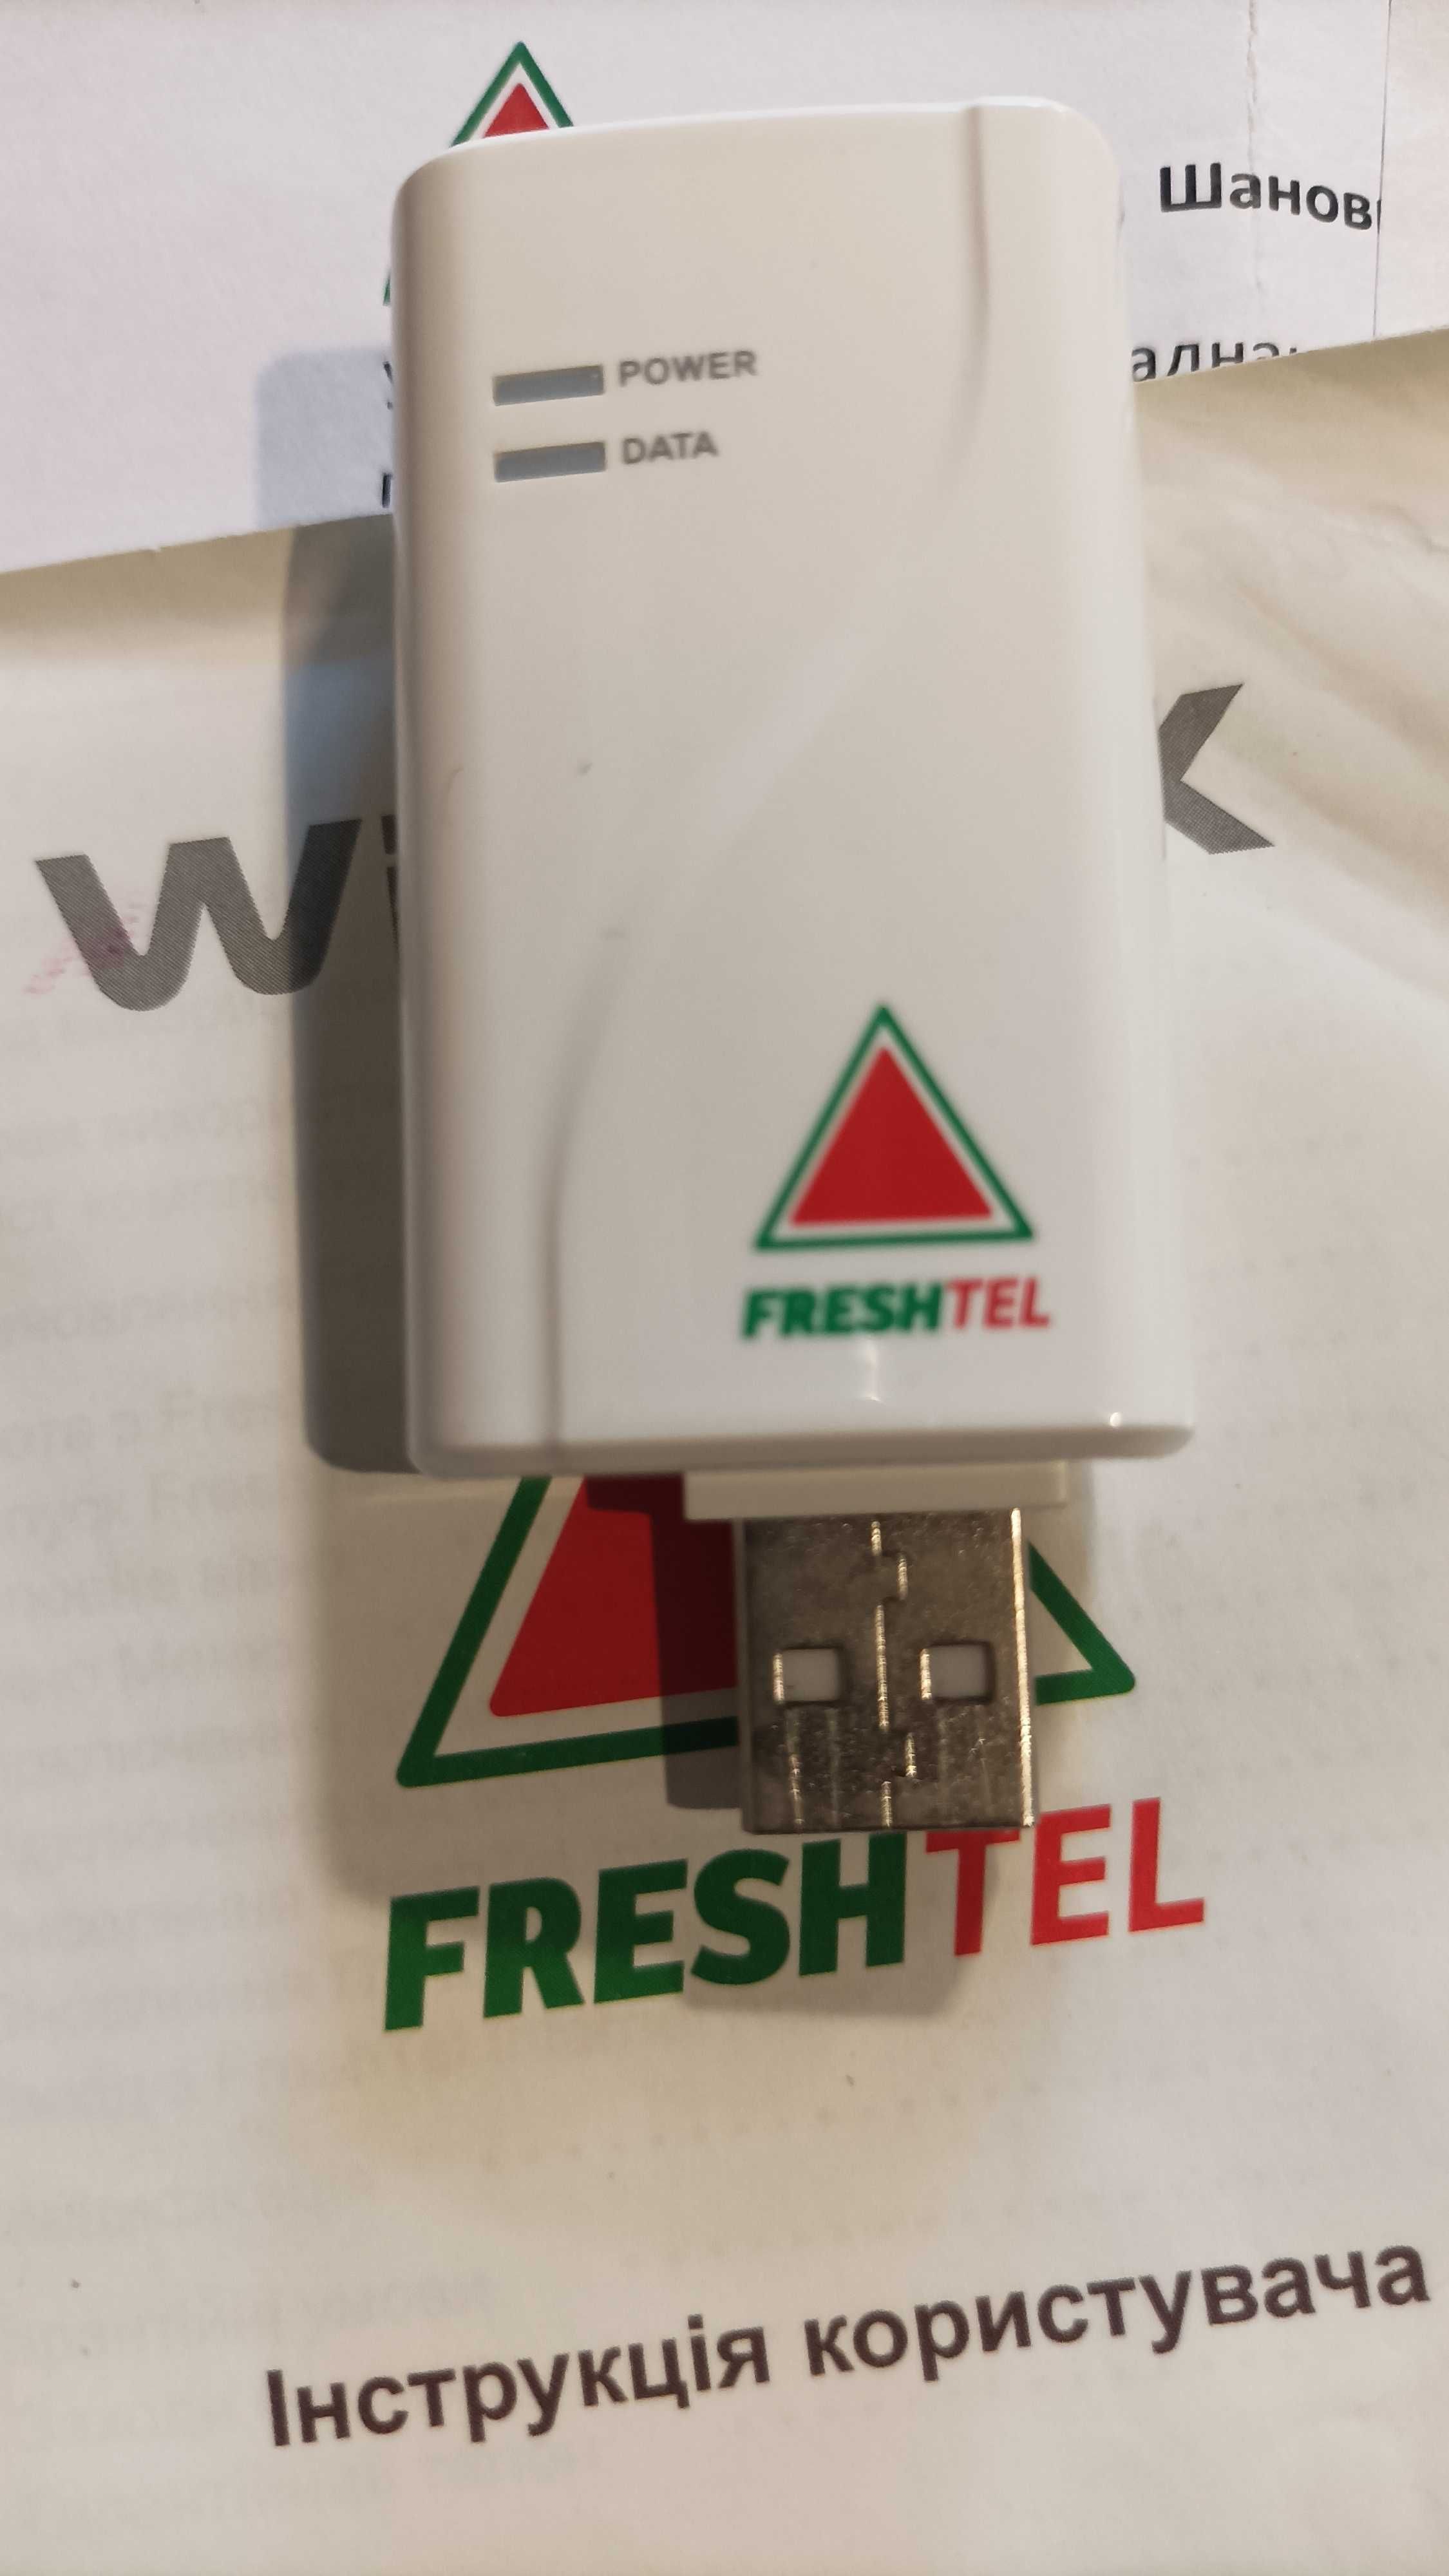 Модем USB WiMax IEEE802.15-2005 под брендом FreshTel